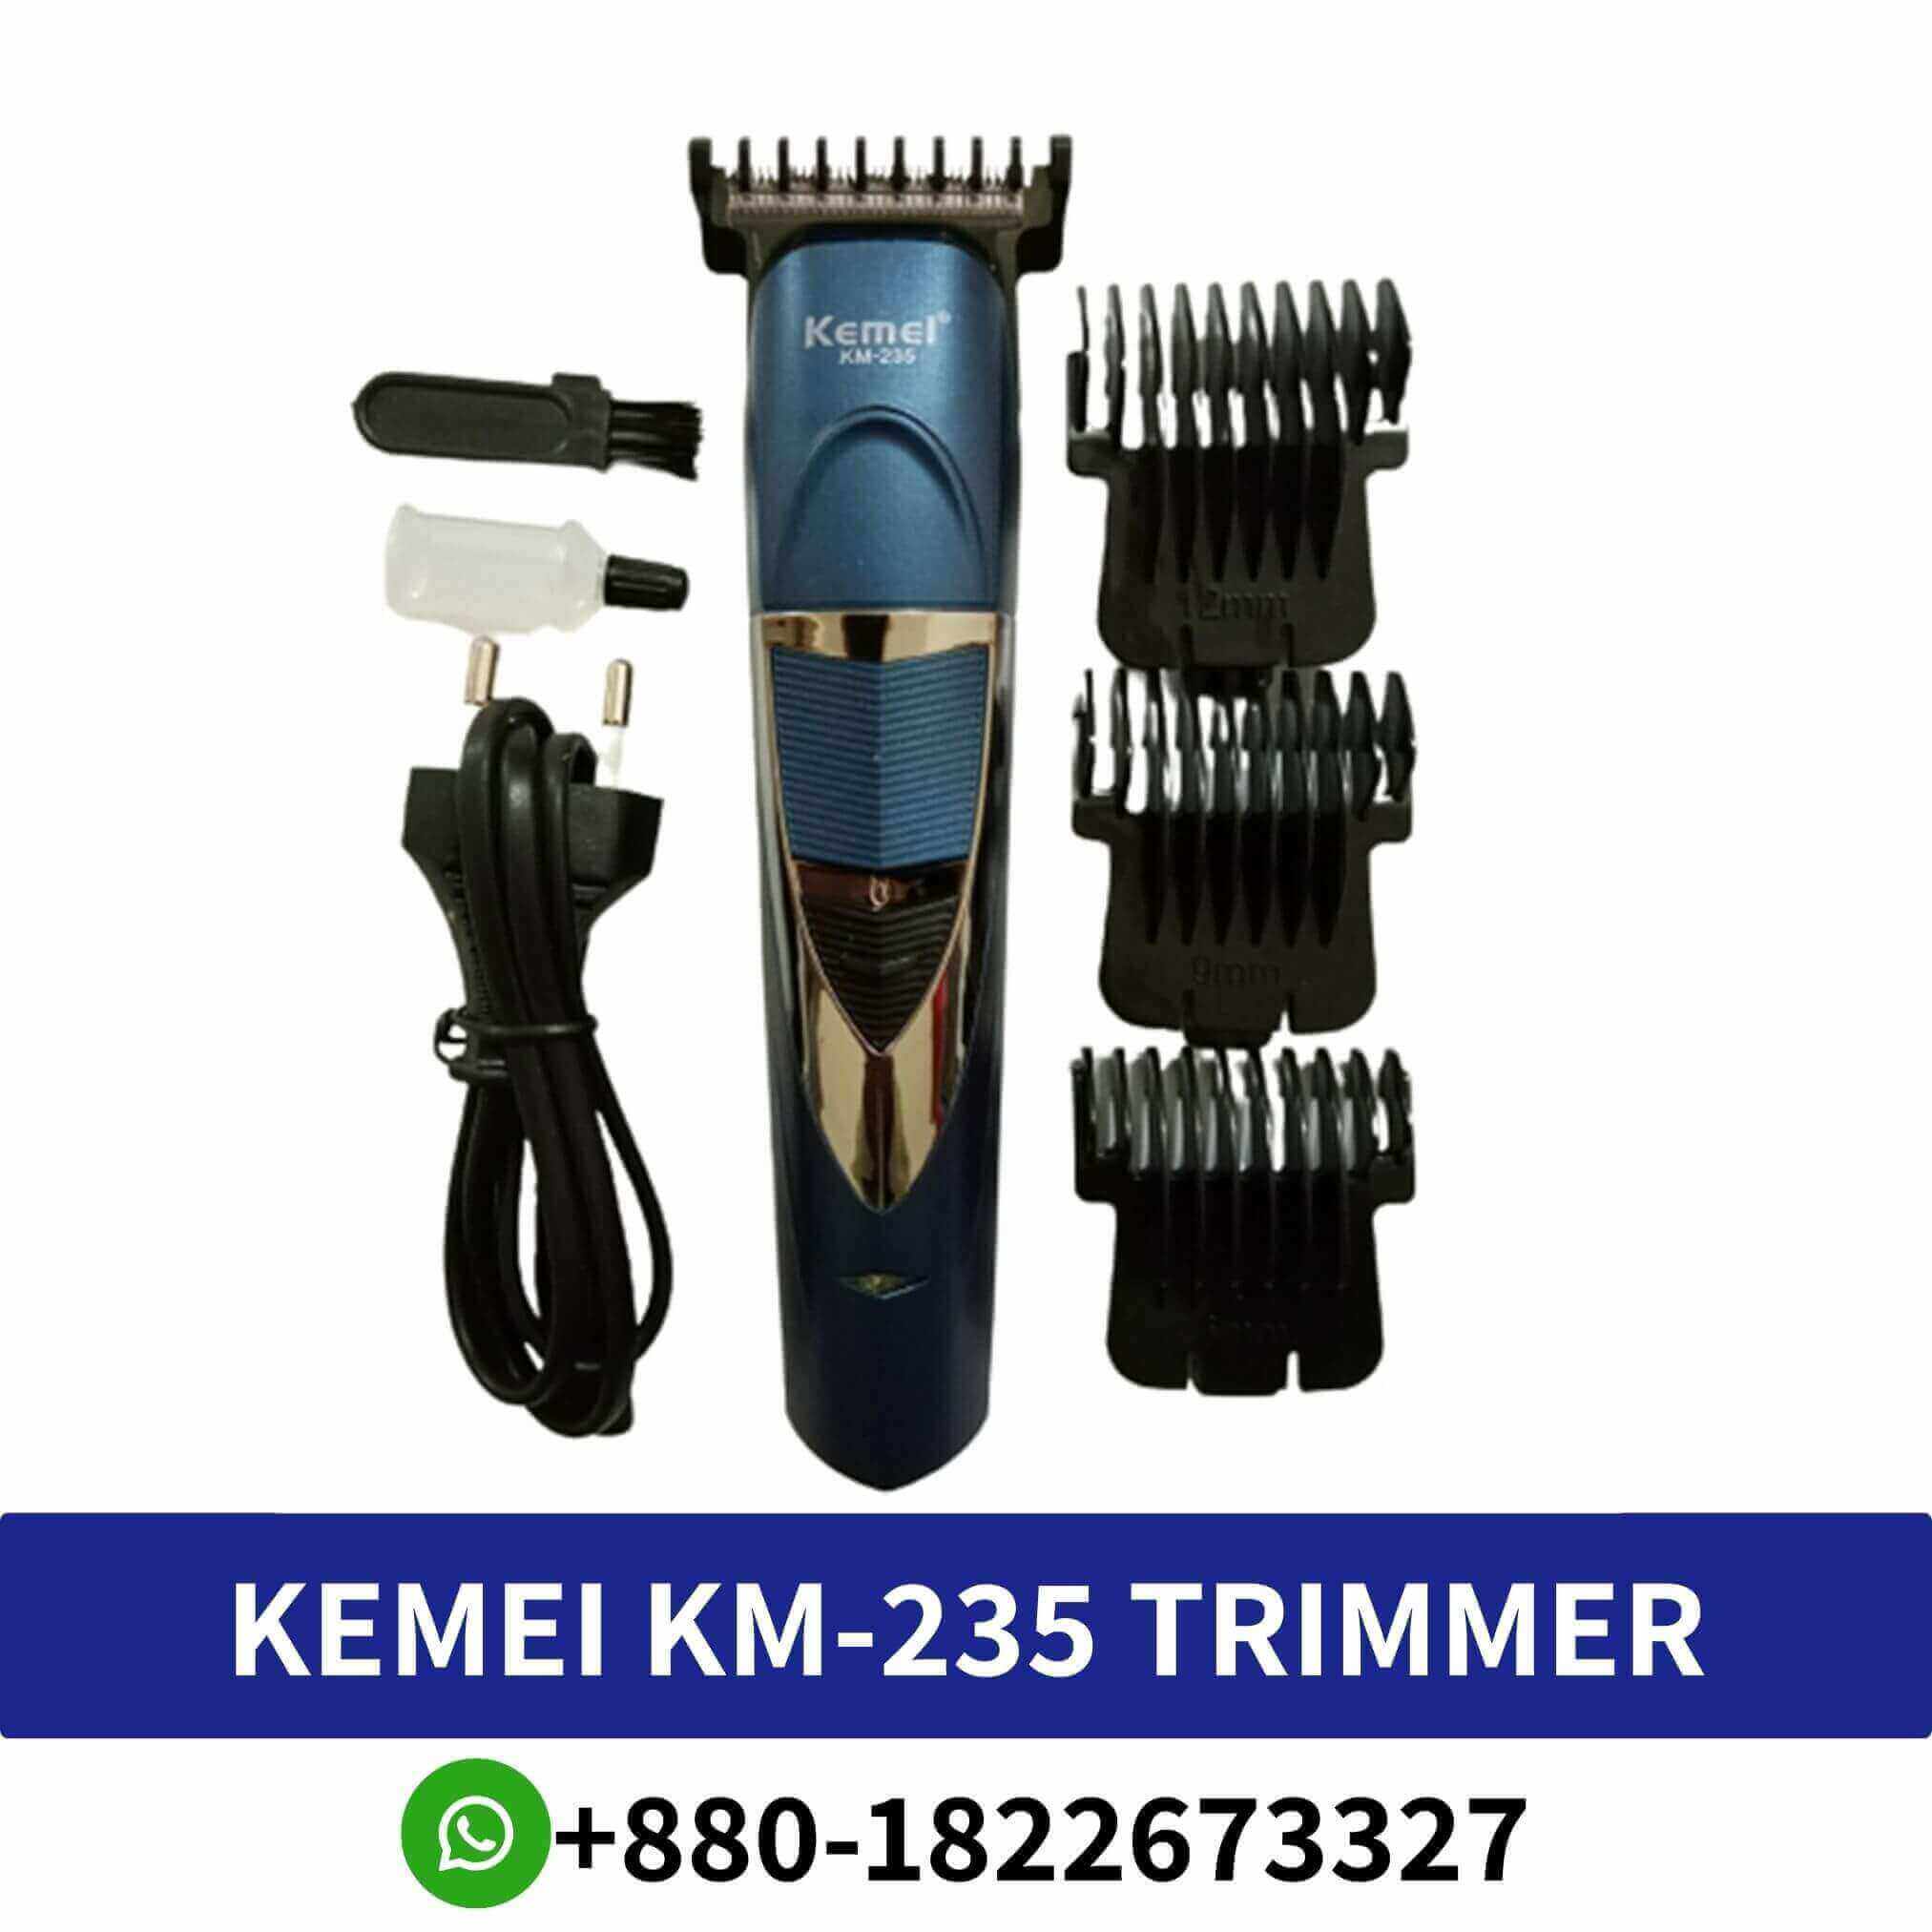 Kemei KM-235 Trimmer